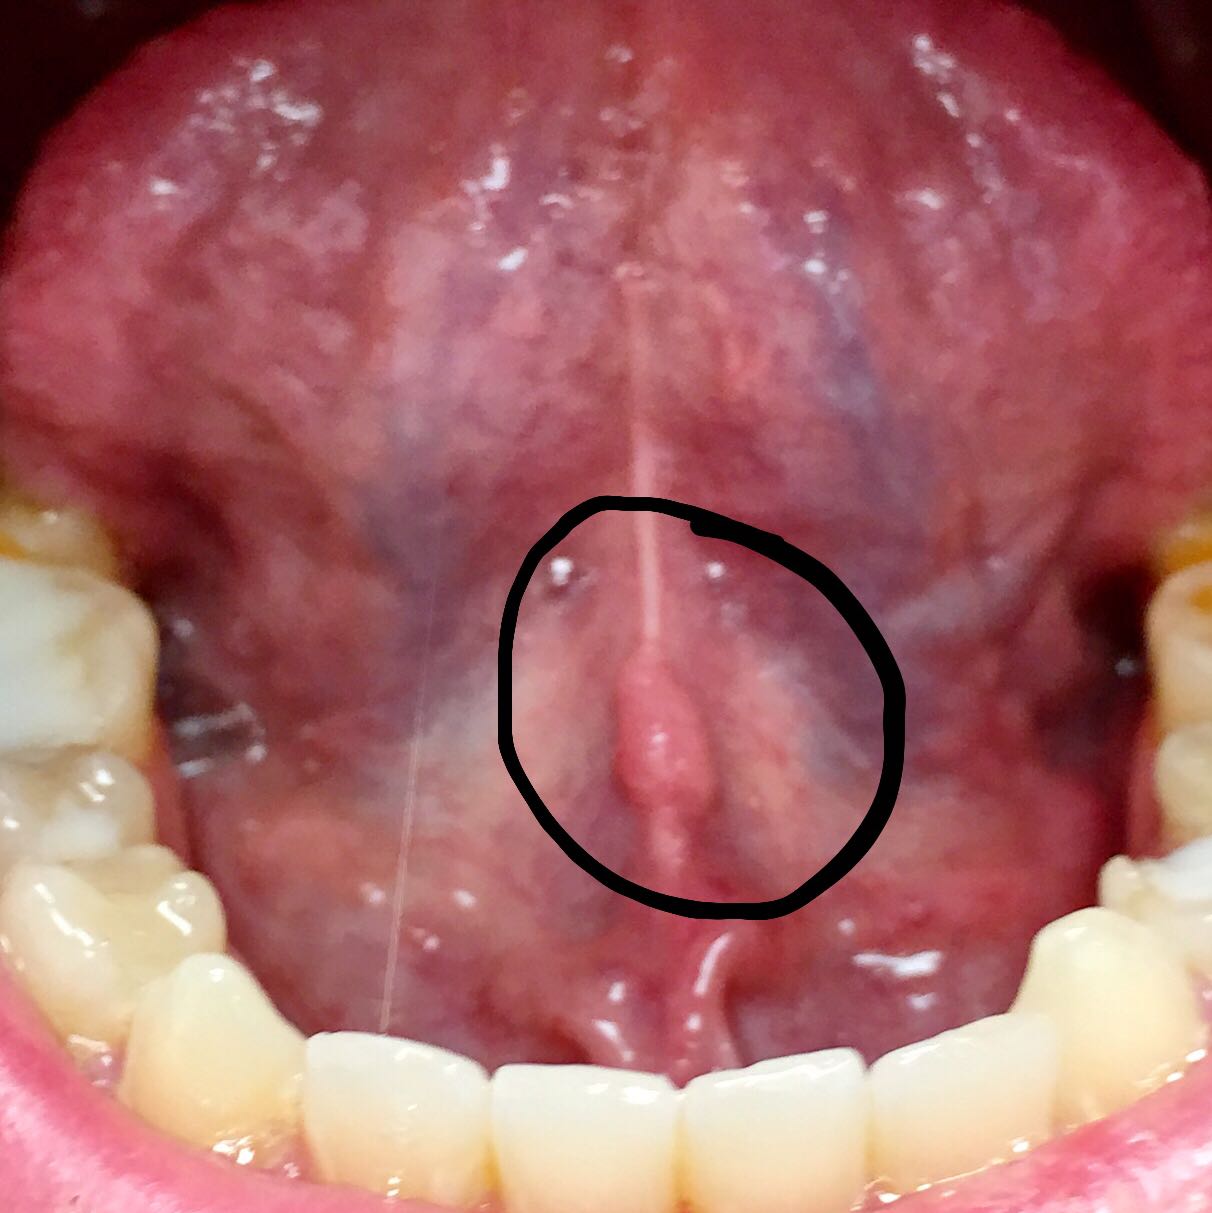 33+ Knoten unter der zunge bilder , Knubbel unter dem Zungenbändchen schlimm? (Arzt, Zunge, Medical)